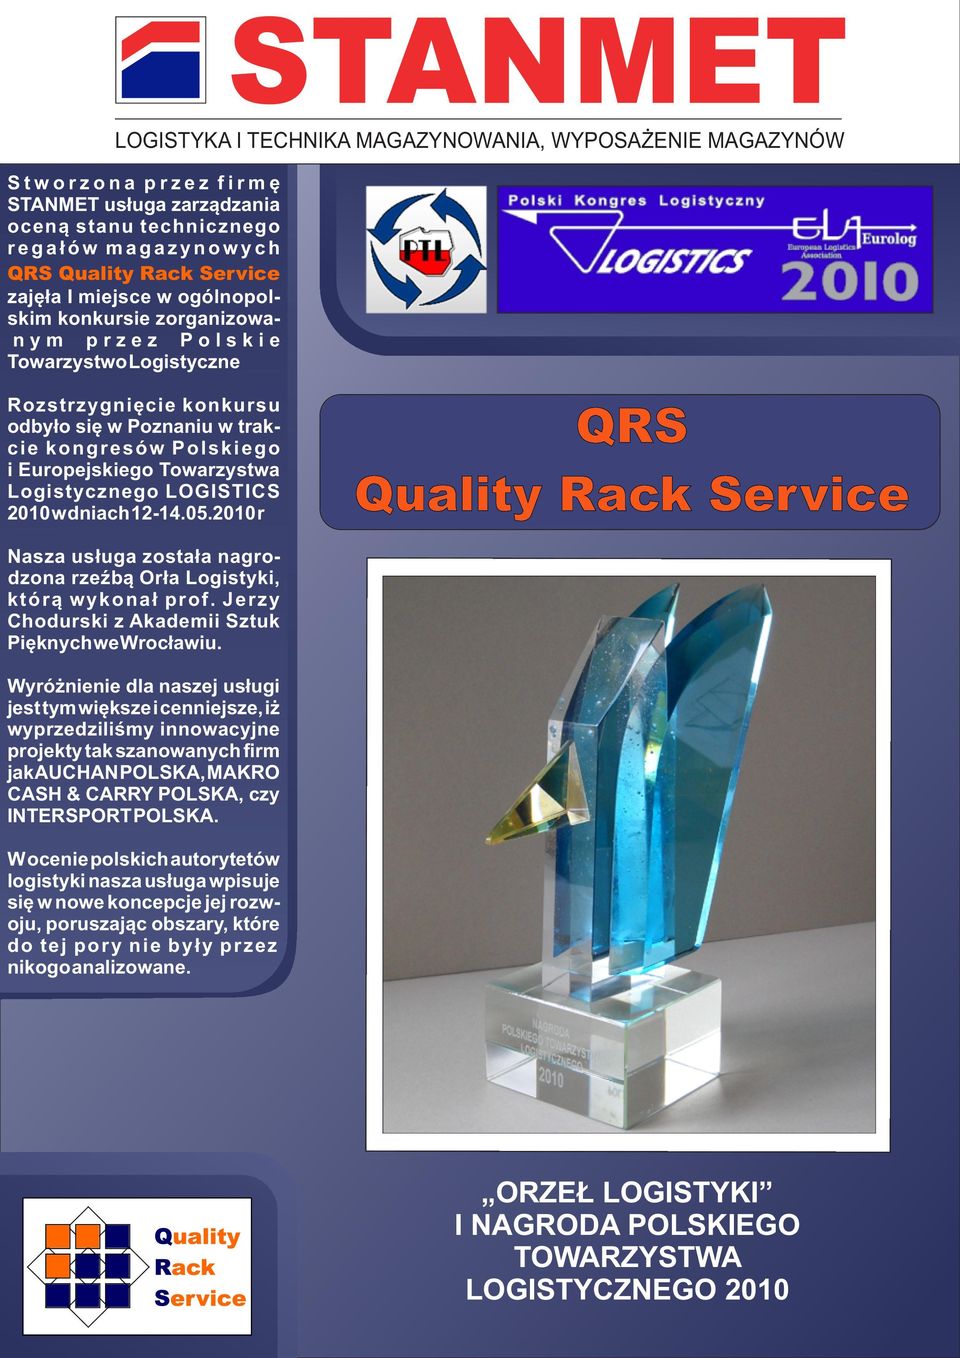 2010 r QRS Quality Rack Service Nasza usługa została nagrodzona rzeźbą Orła Logistyki, którą wykonał prof. Jerzy Chodurski z Akademii Sztuk Pięknych we Wrocławiu.